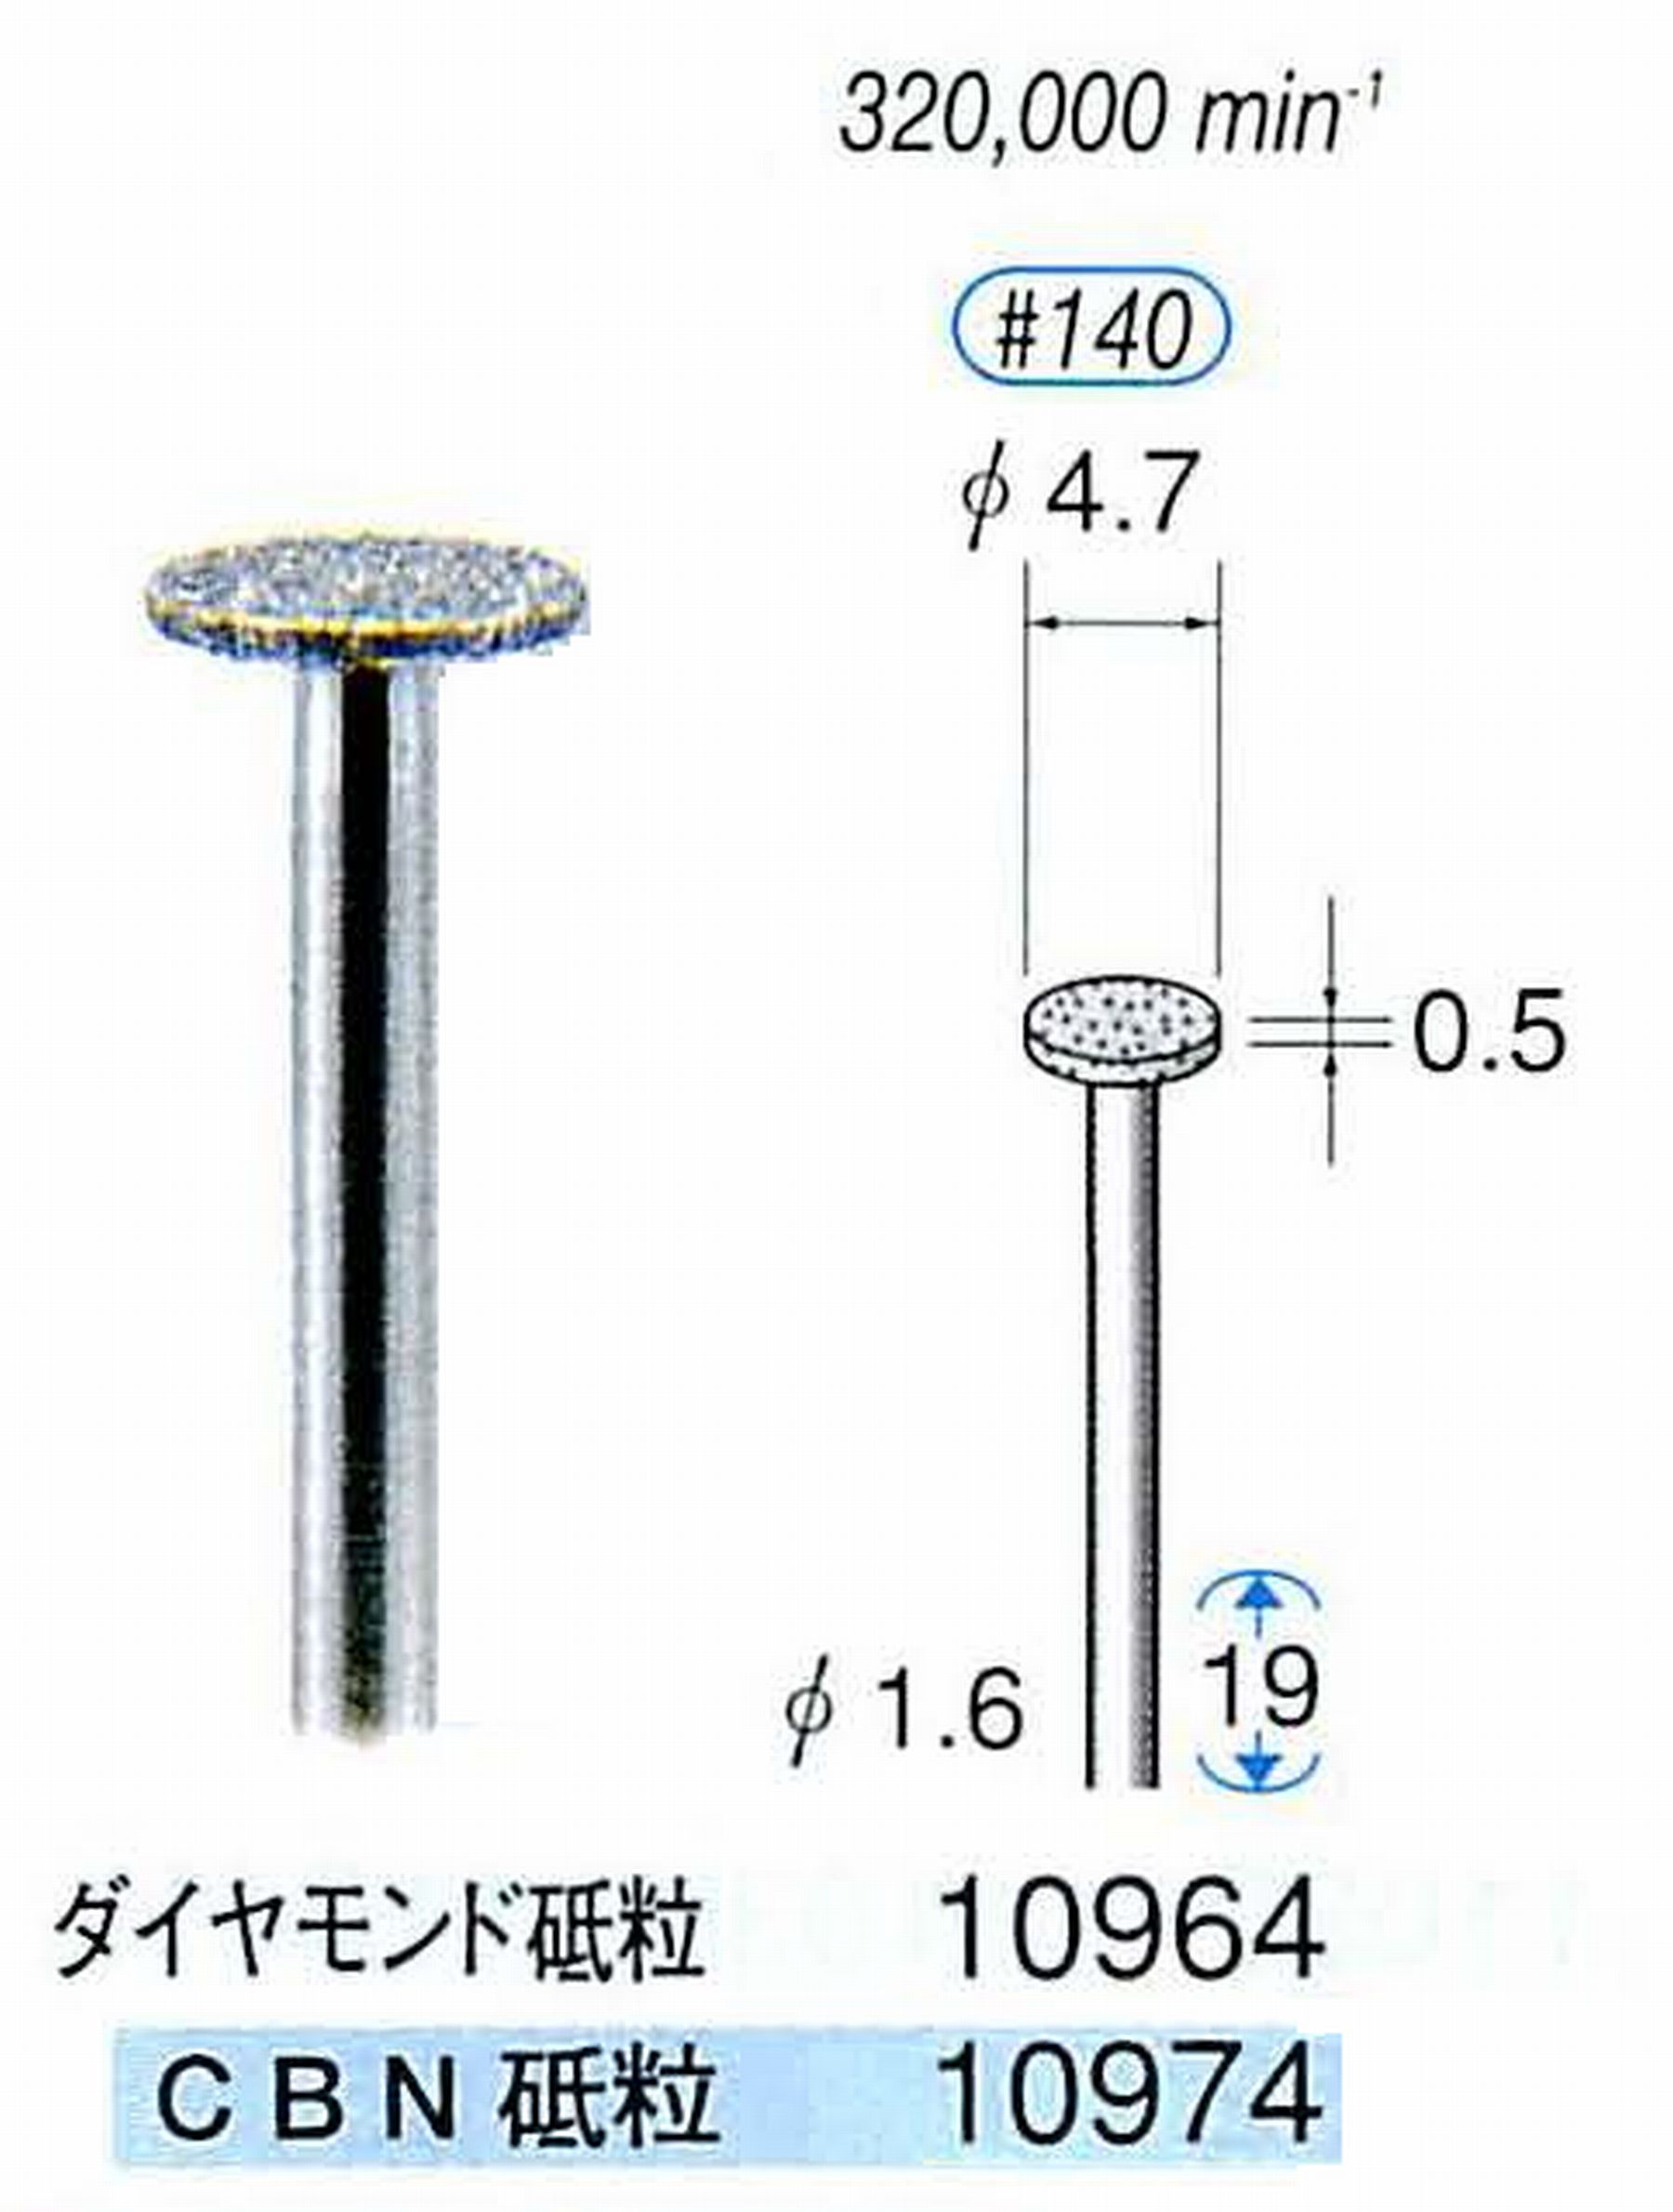 ナカニシ/NAKANISHI 電着CBNバー(ミニチュアタイプ)CBN砥粒 軸径(シャンク)φ1.6mm 10974